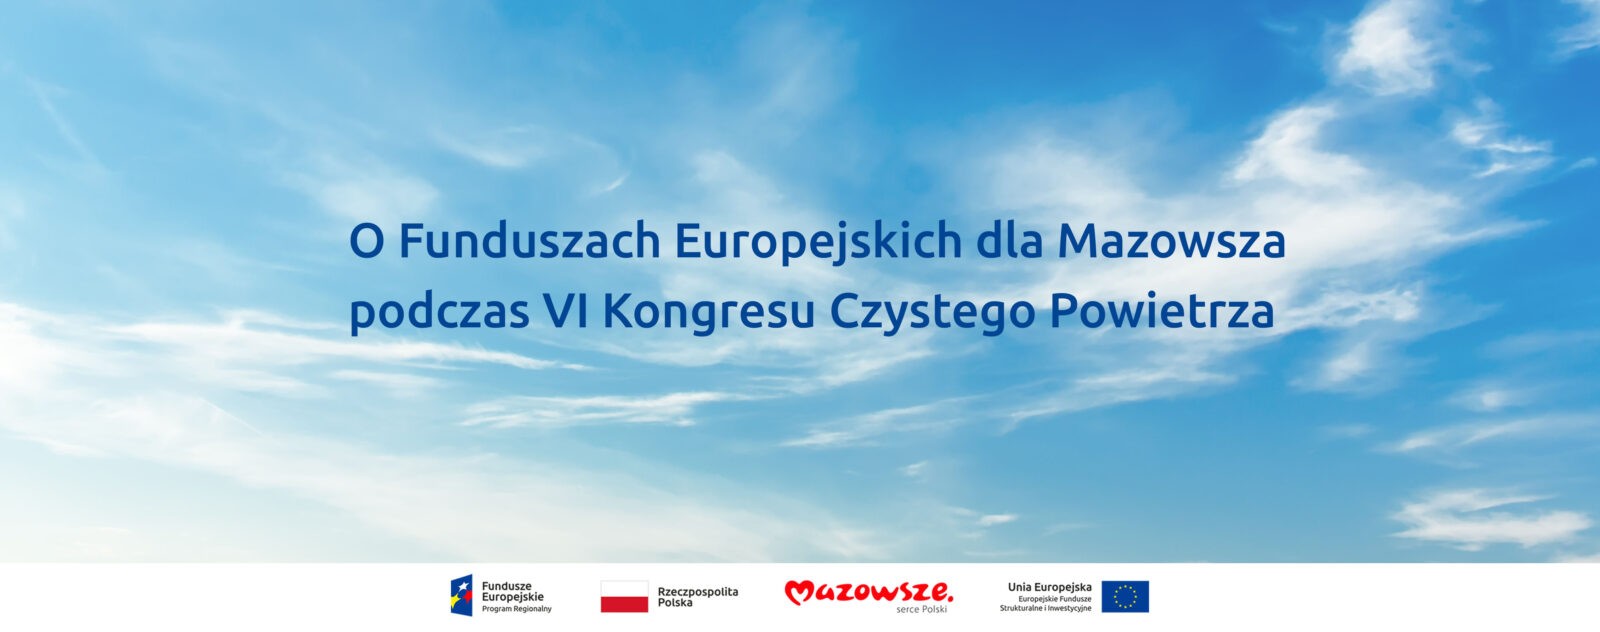 O Funduszach Europejskich dla Mazowsza podczas VI Kongresu Czystego Powietrza, a w tle niebo